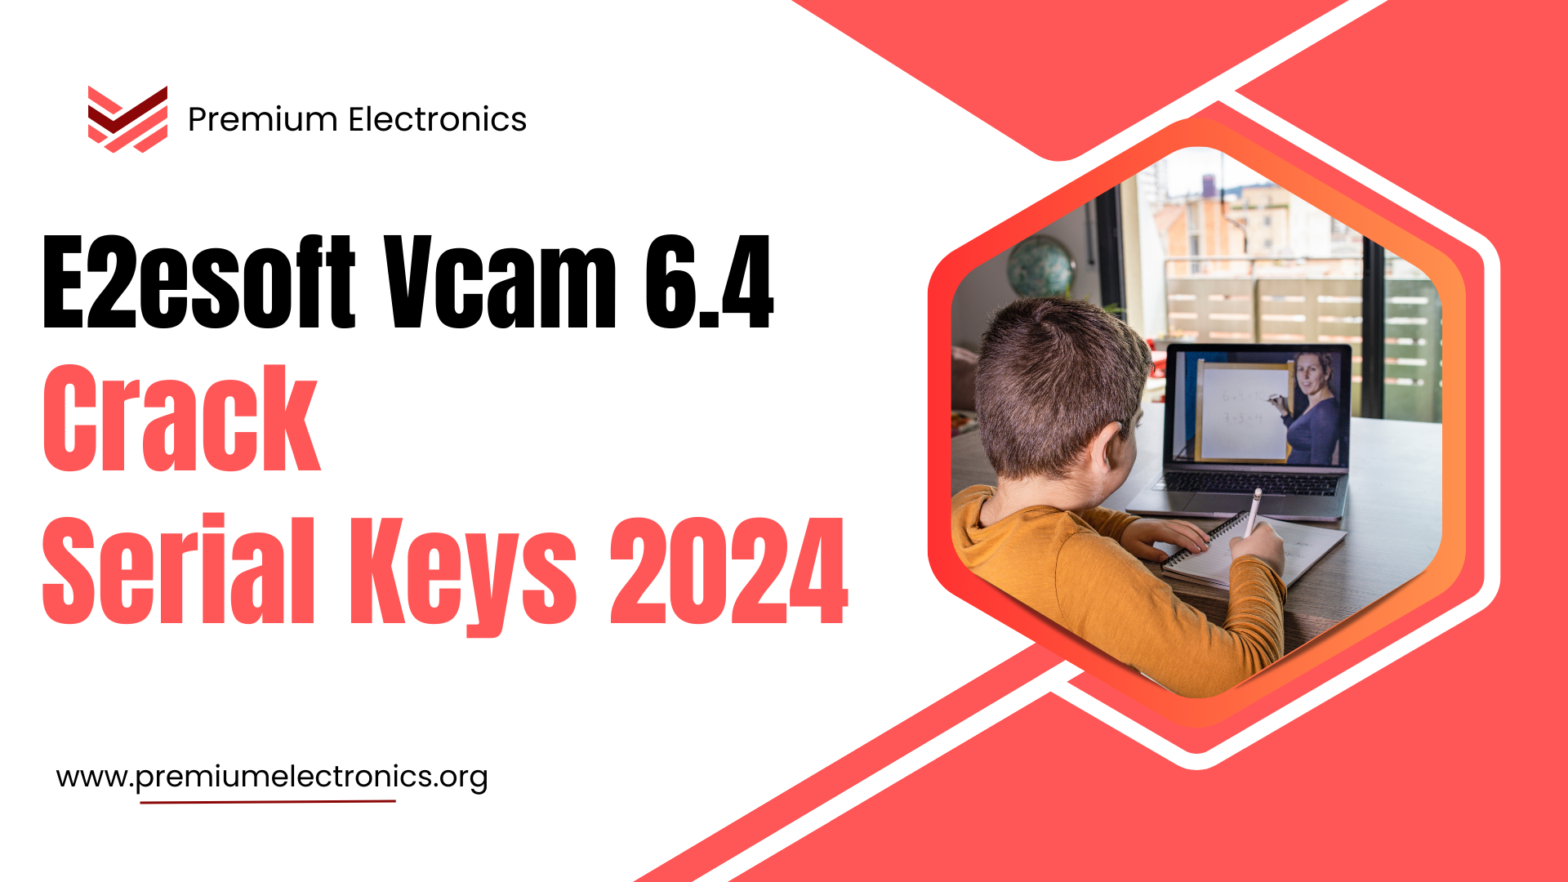 E2esoft Vcam Crack v6.4 with Serial Keys